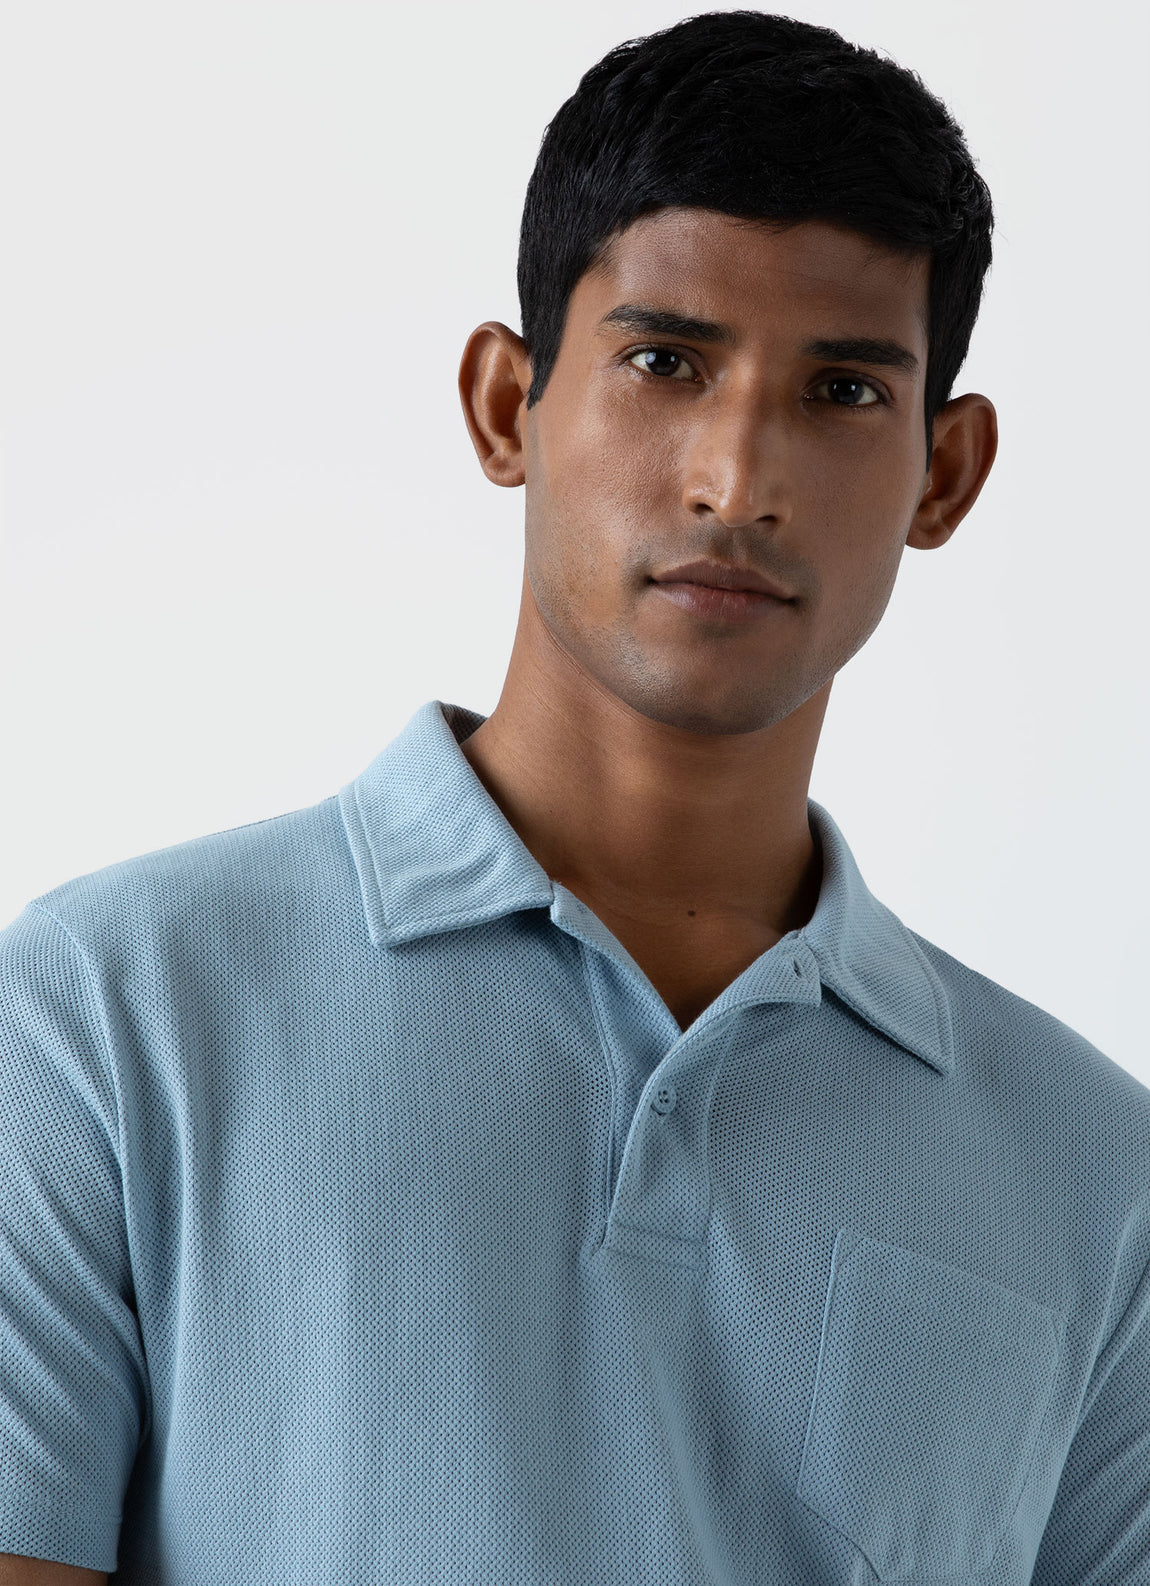 Men's Riviera Polo Shirt in Sky Blue | Sunspel